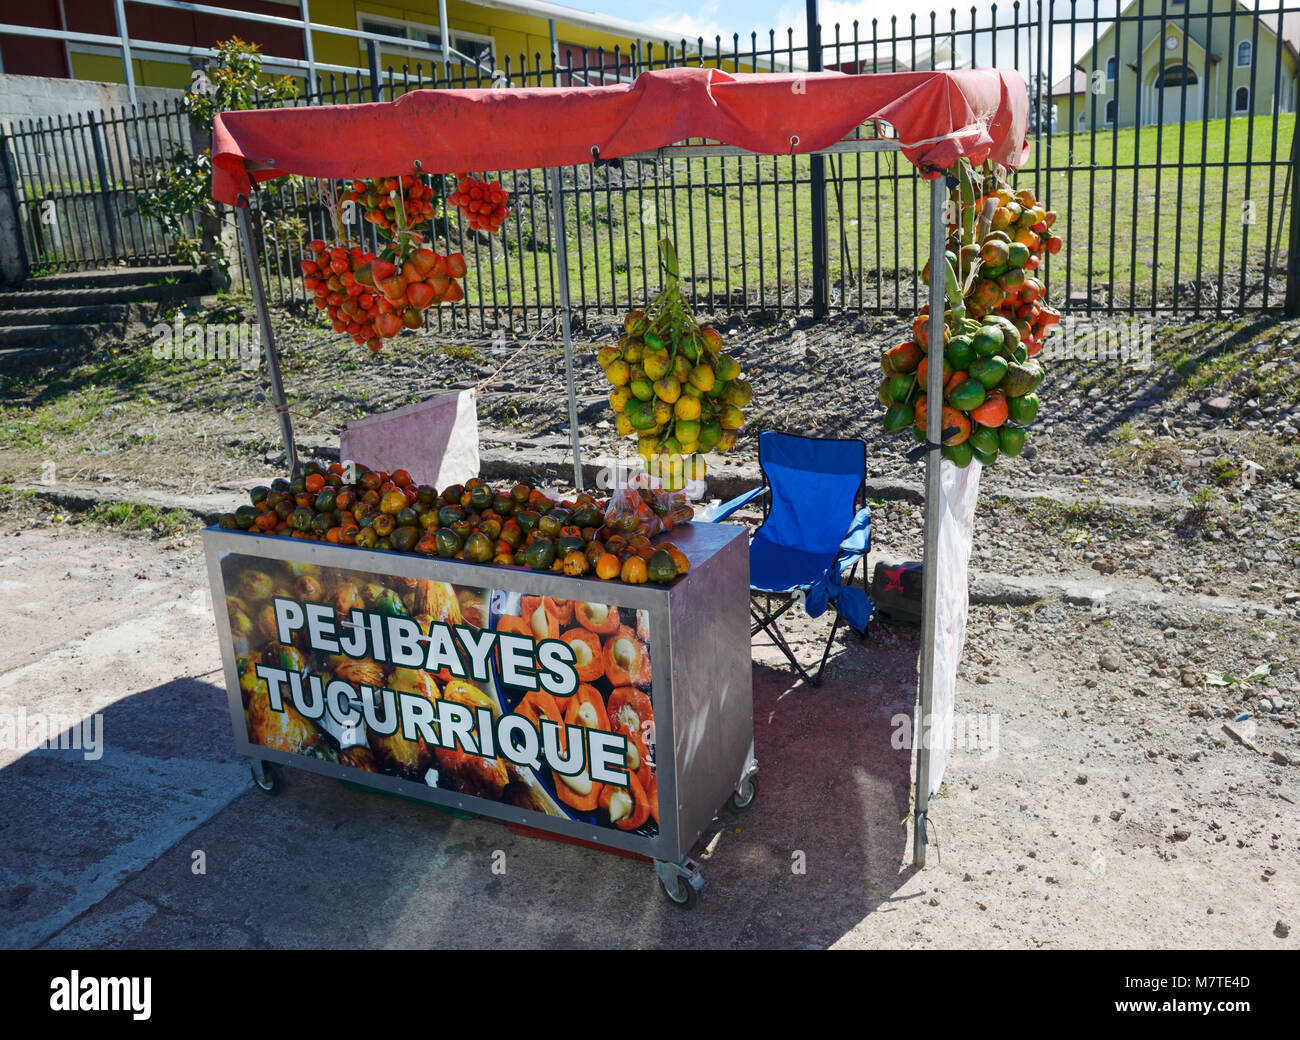 Frutta stand vendendo pejibayes, frutto di Bactris dasipaes o le pesche frutto di Palm. Costa Rica Foto Stock